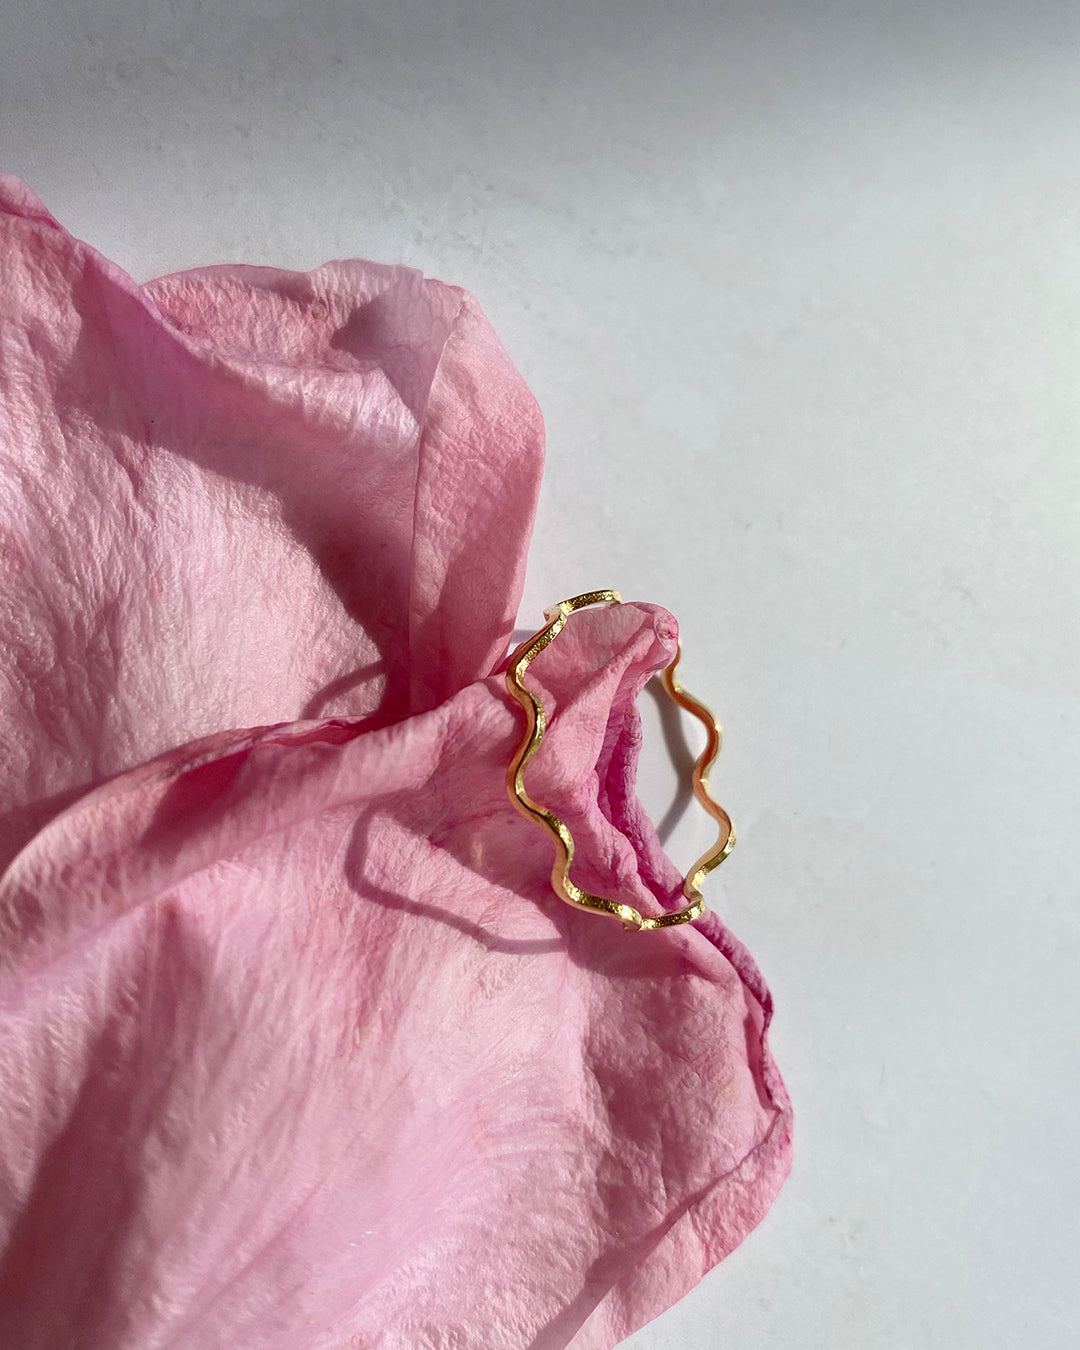 IDAMARI Billow Ring in Gold available at Lahn.shop